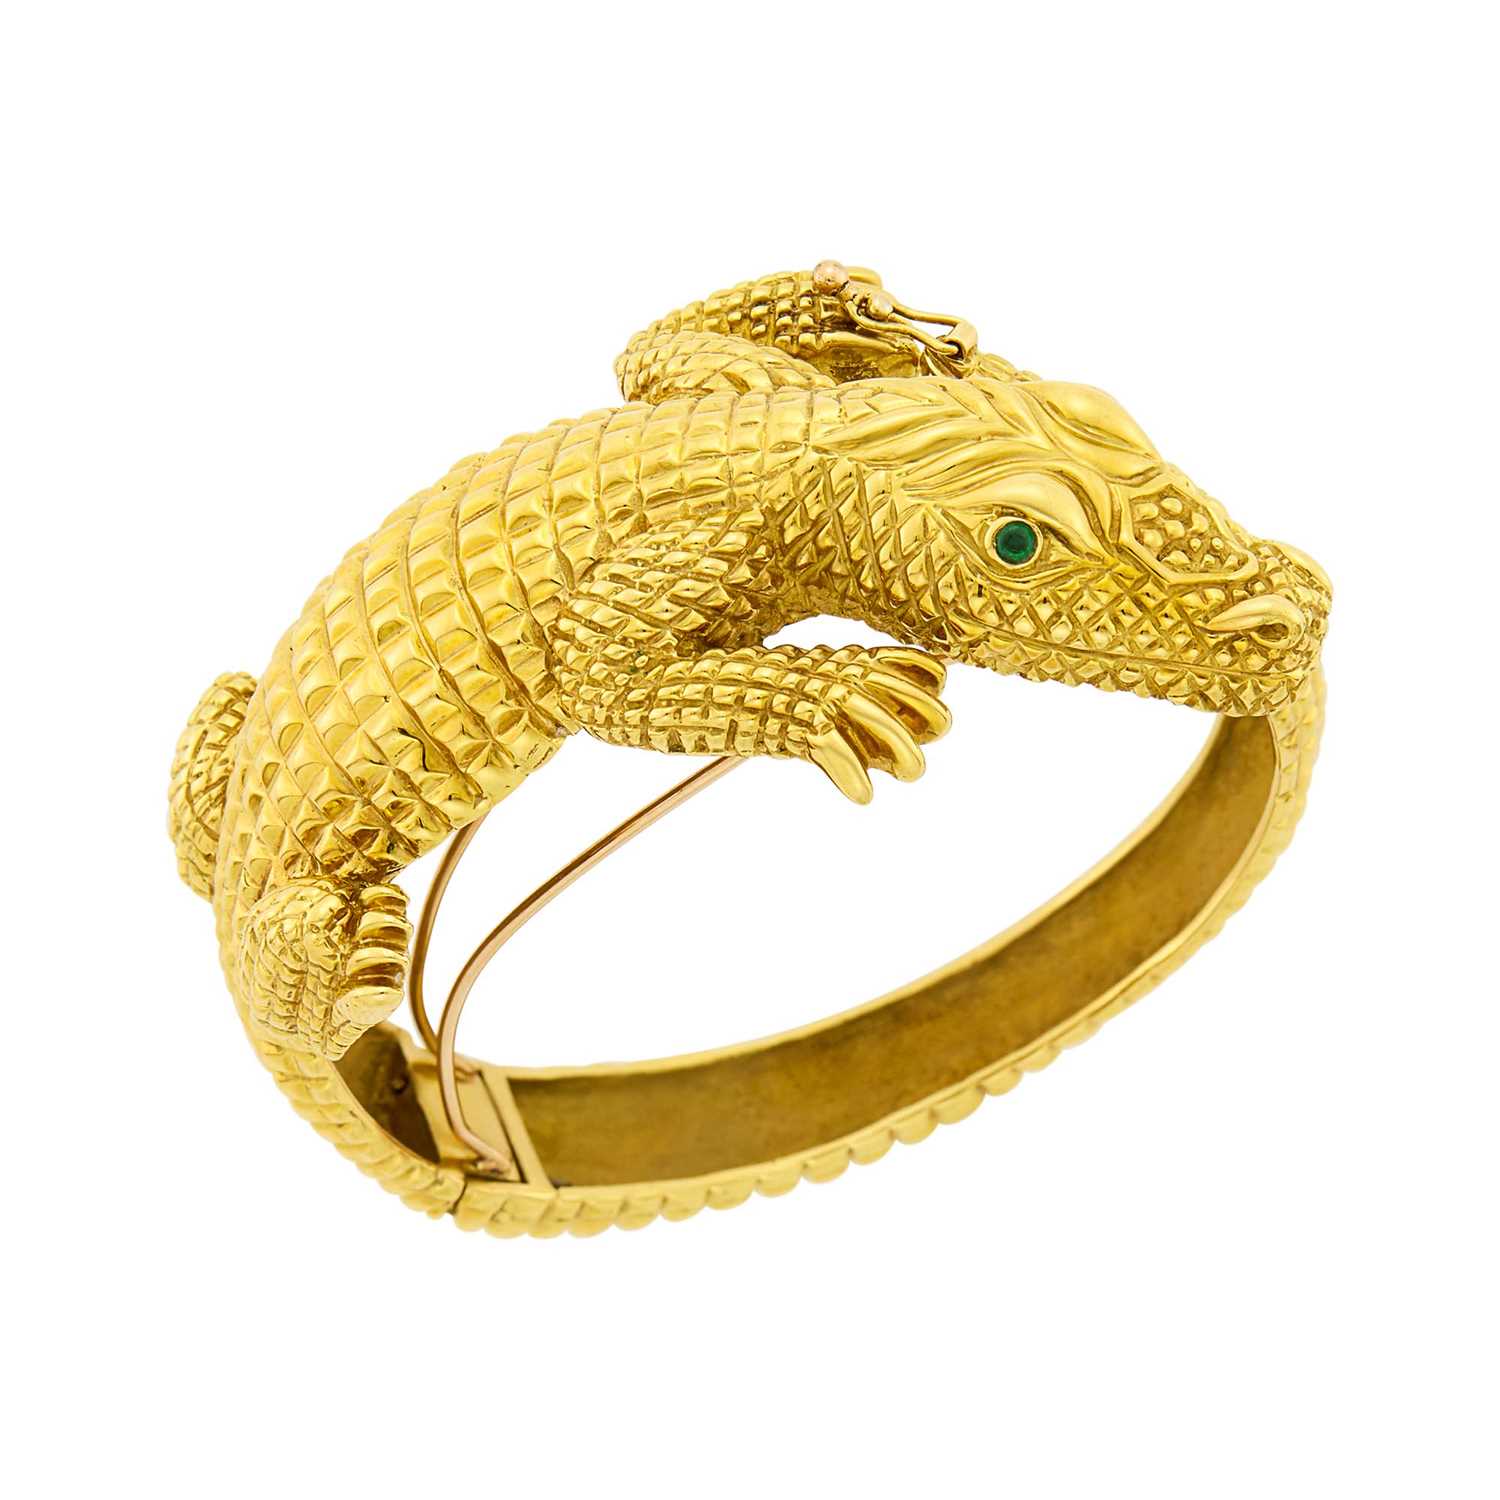 Lot 1194 - Gold and Emerald Alligator Bangle Bracelet